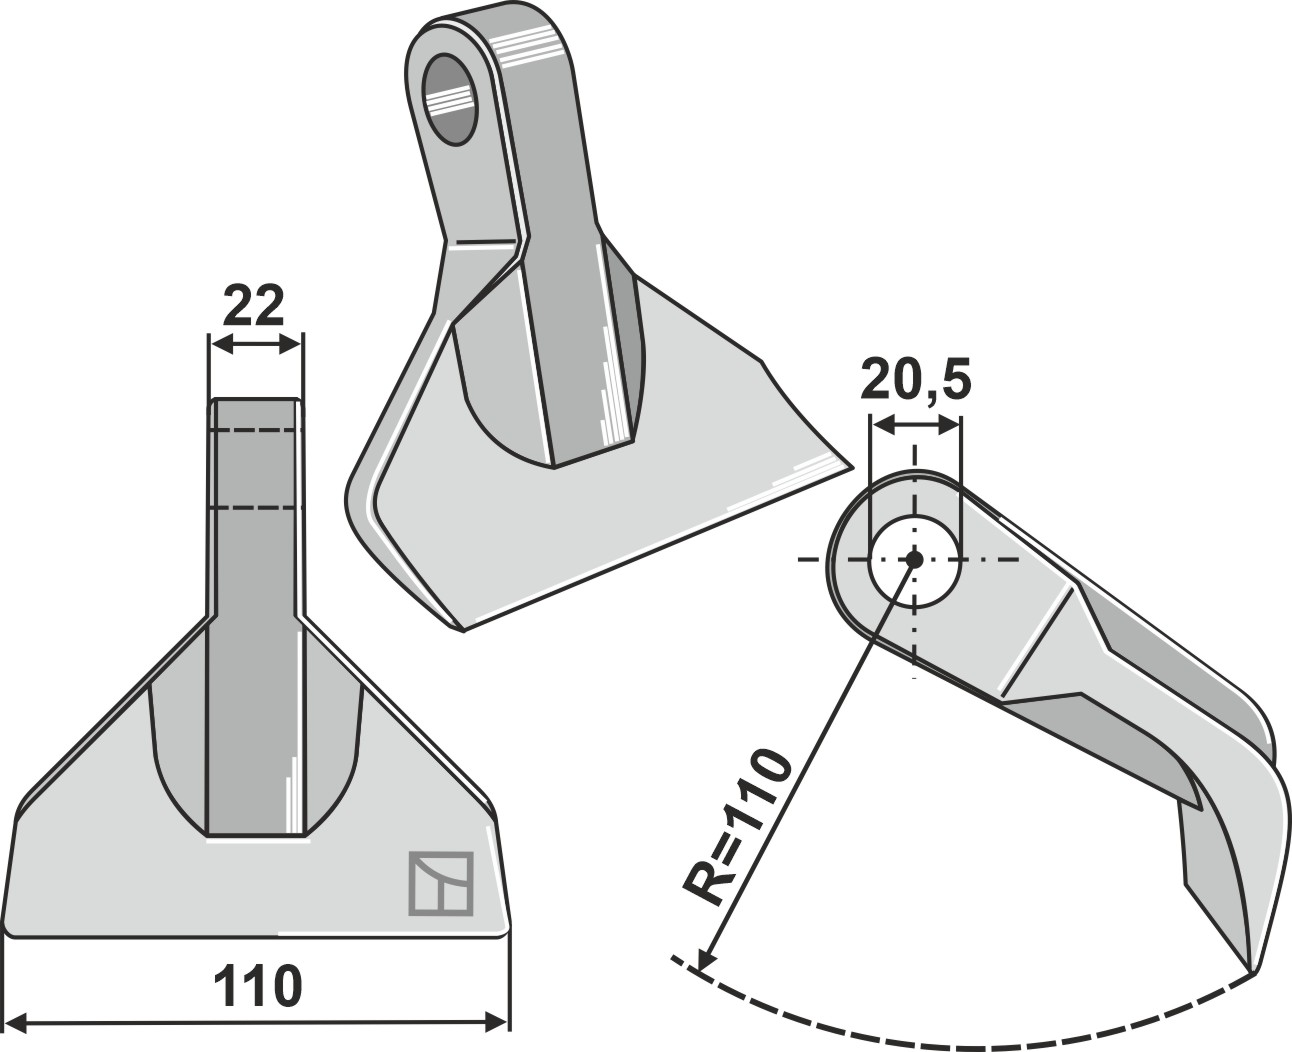 Hammerschlegel geeignet für: Perfect Hammerslagler, hammerslagler PTA, slagle, L-knive, knive